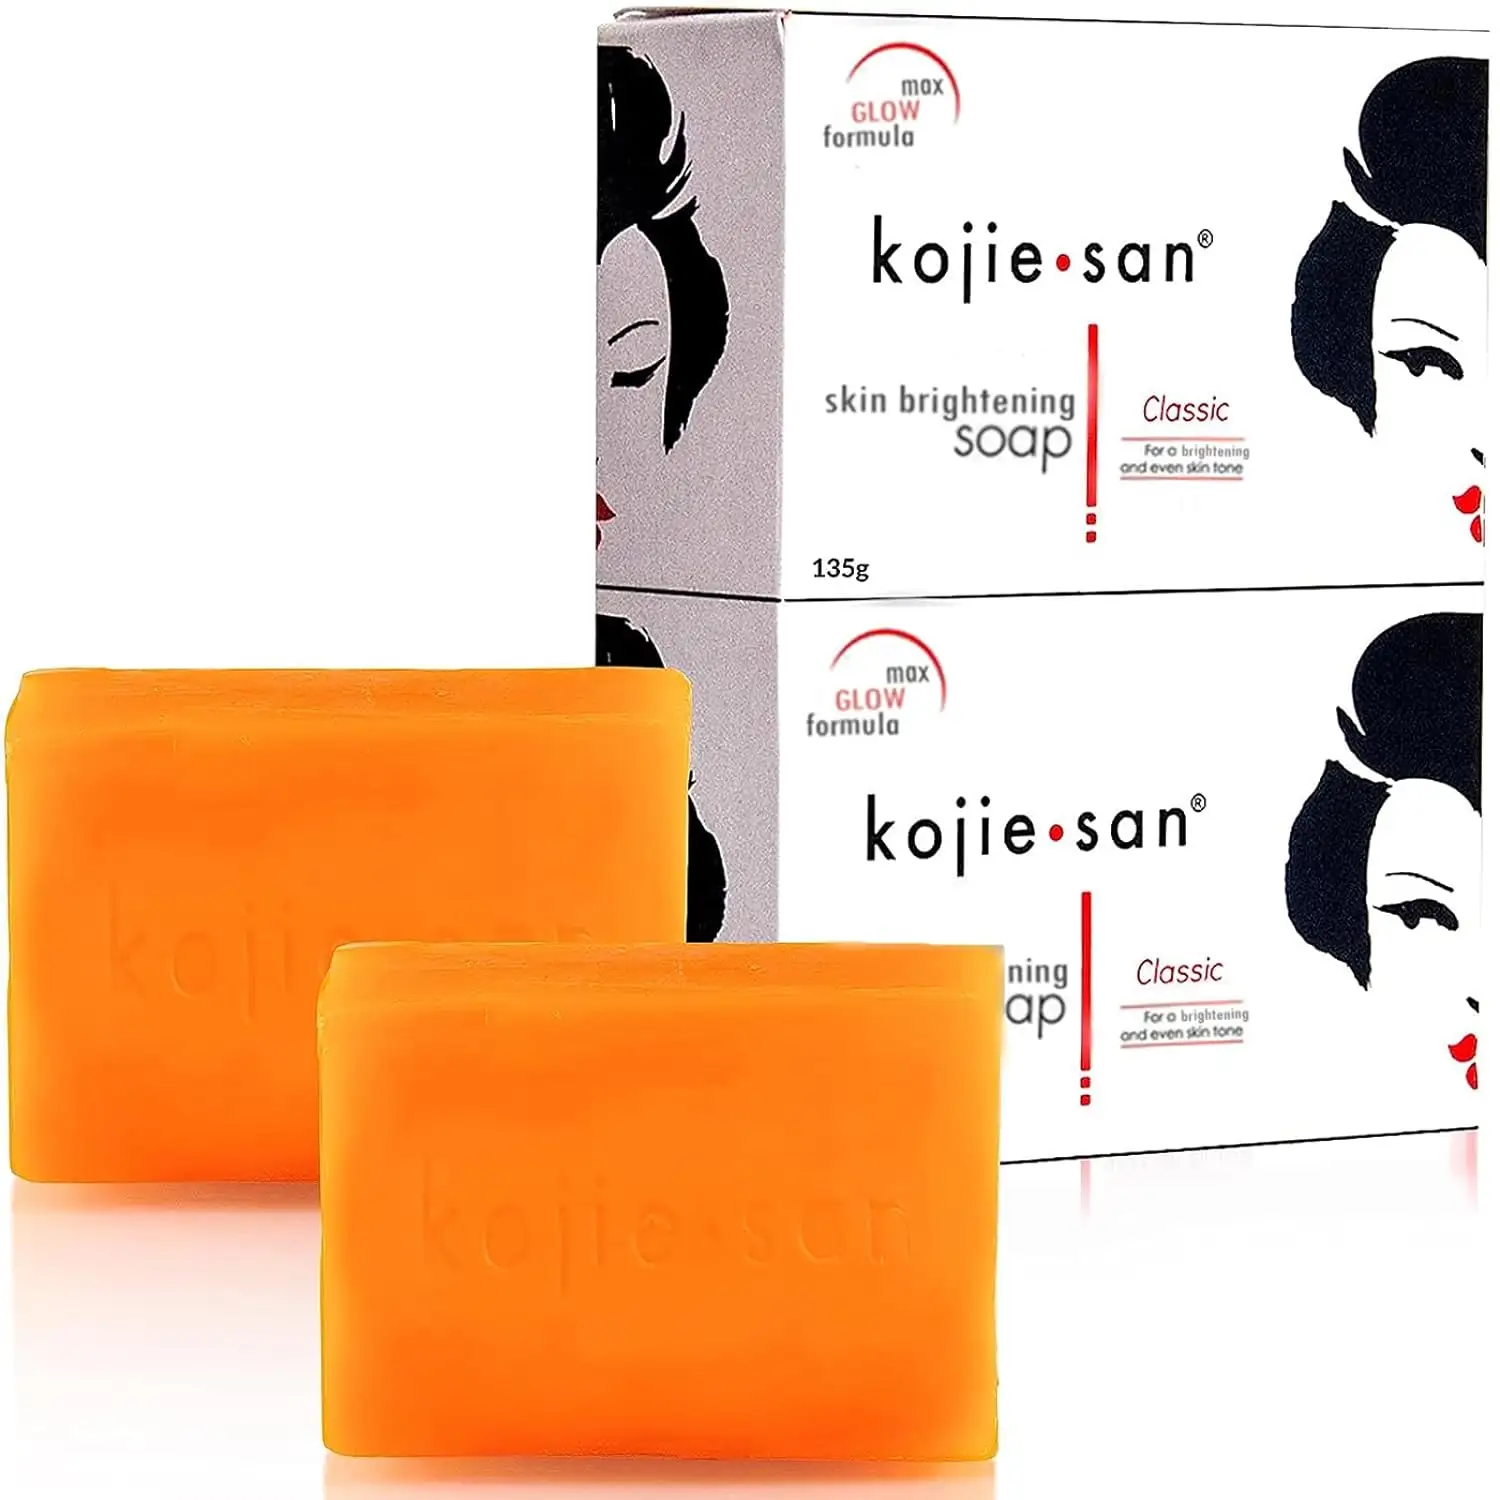 Kojie San White soap 100g.